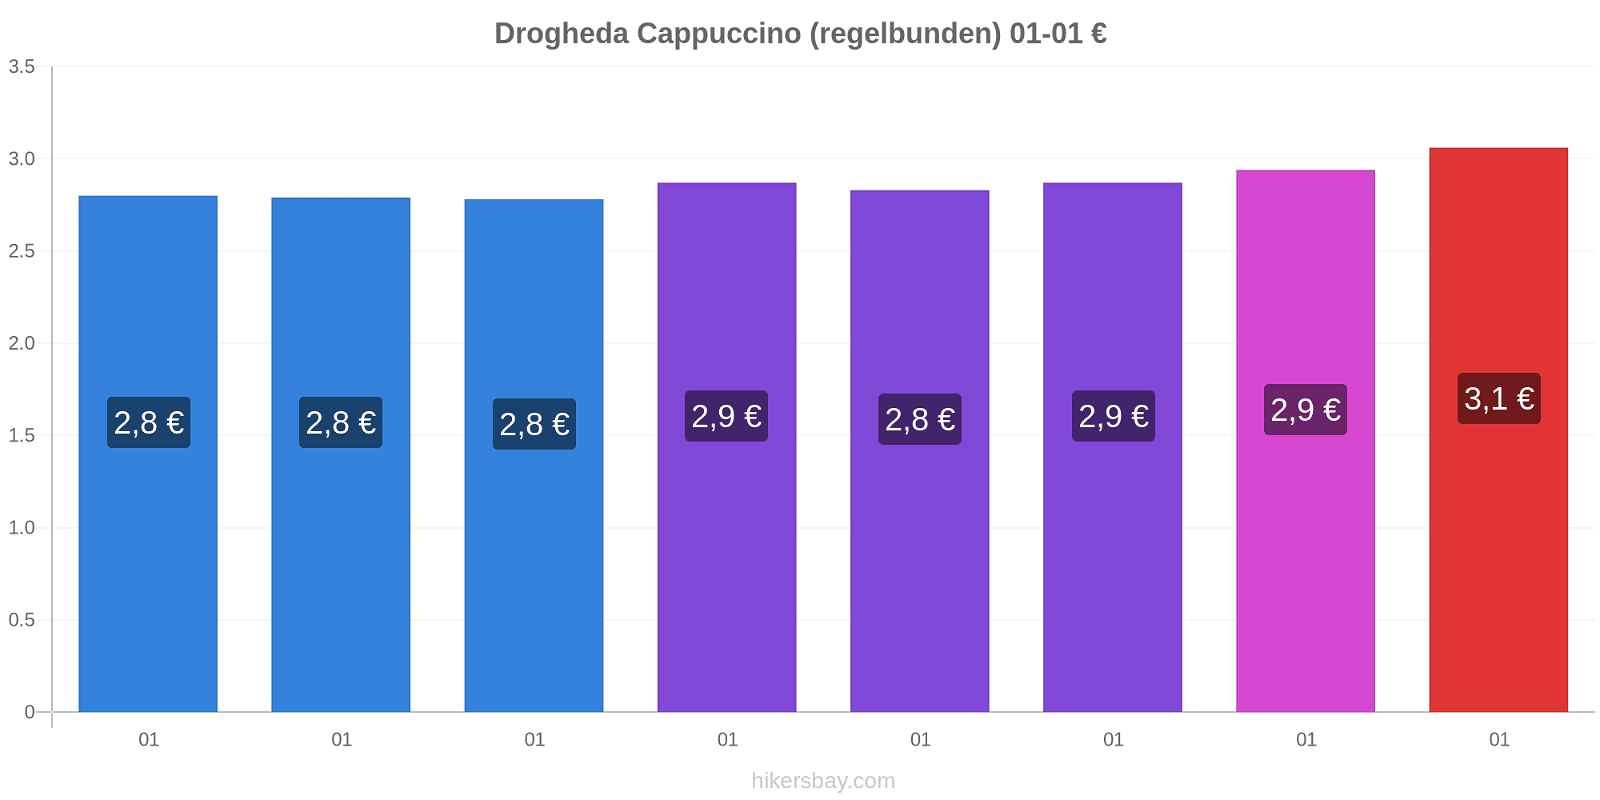 Drogheda prisförändringar Cappuccino (regelbunden) hikersbay.com